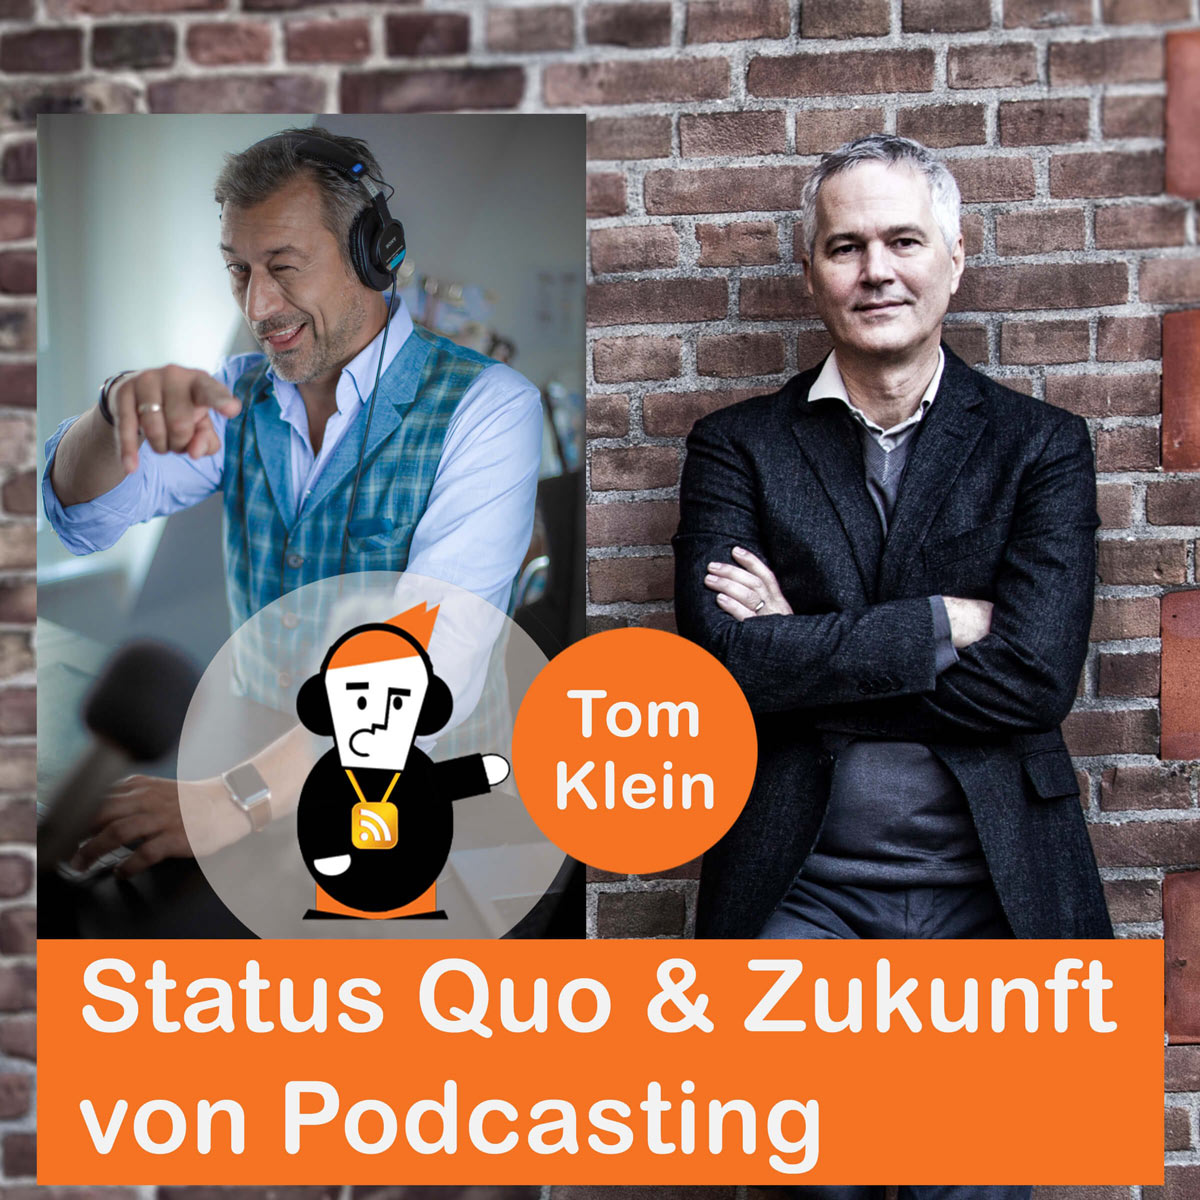 Tom Klein | Podcast | Satus Quo und Zukunft